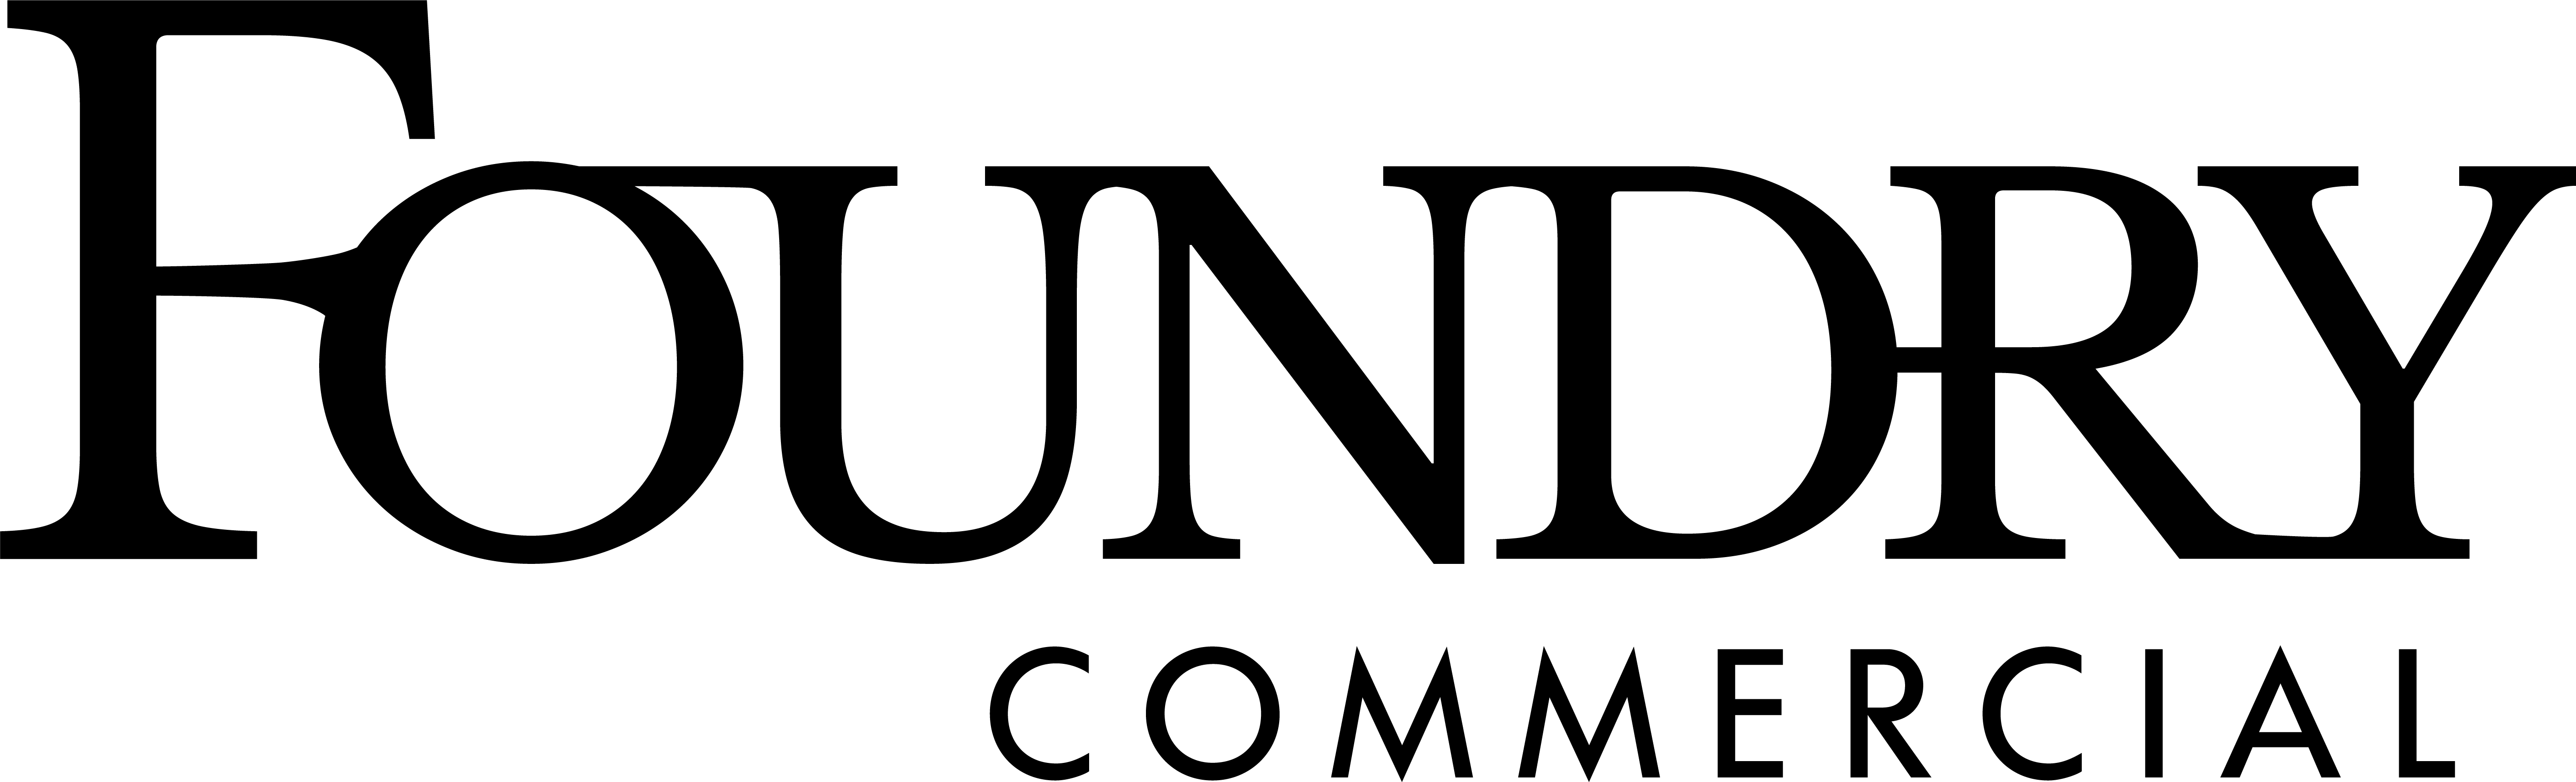 Foundry Commercial Company Logo